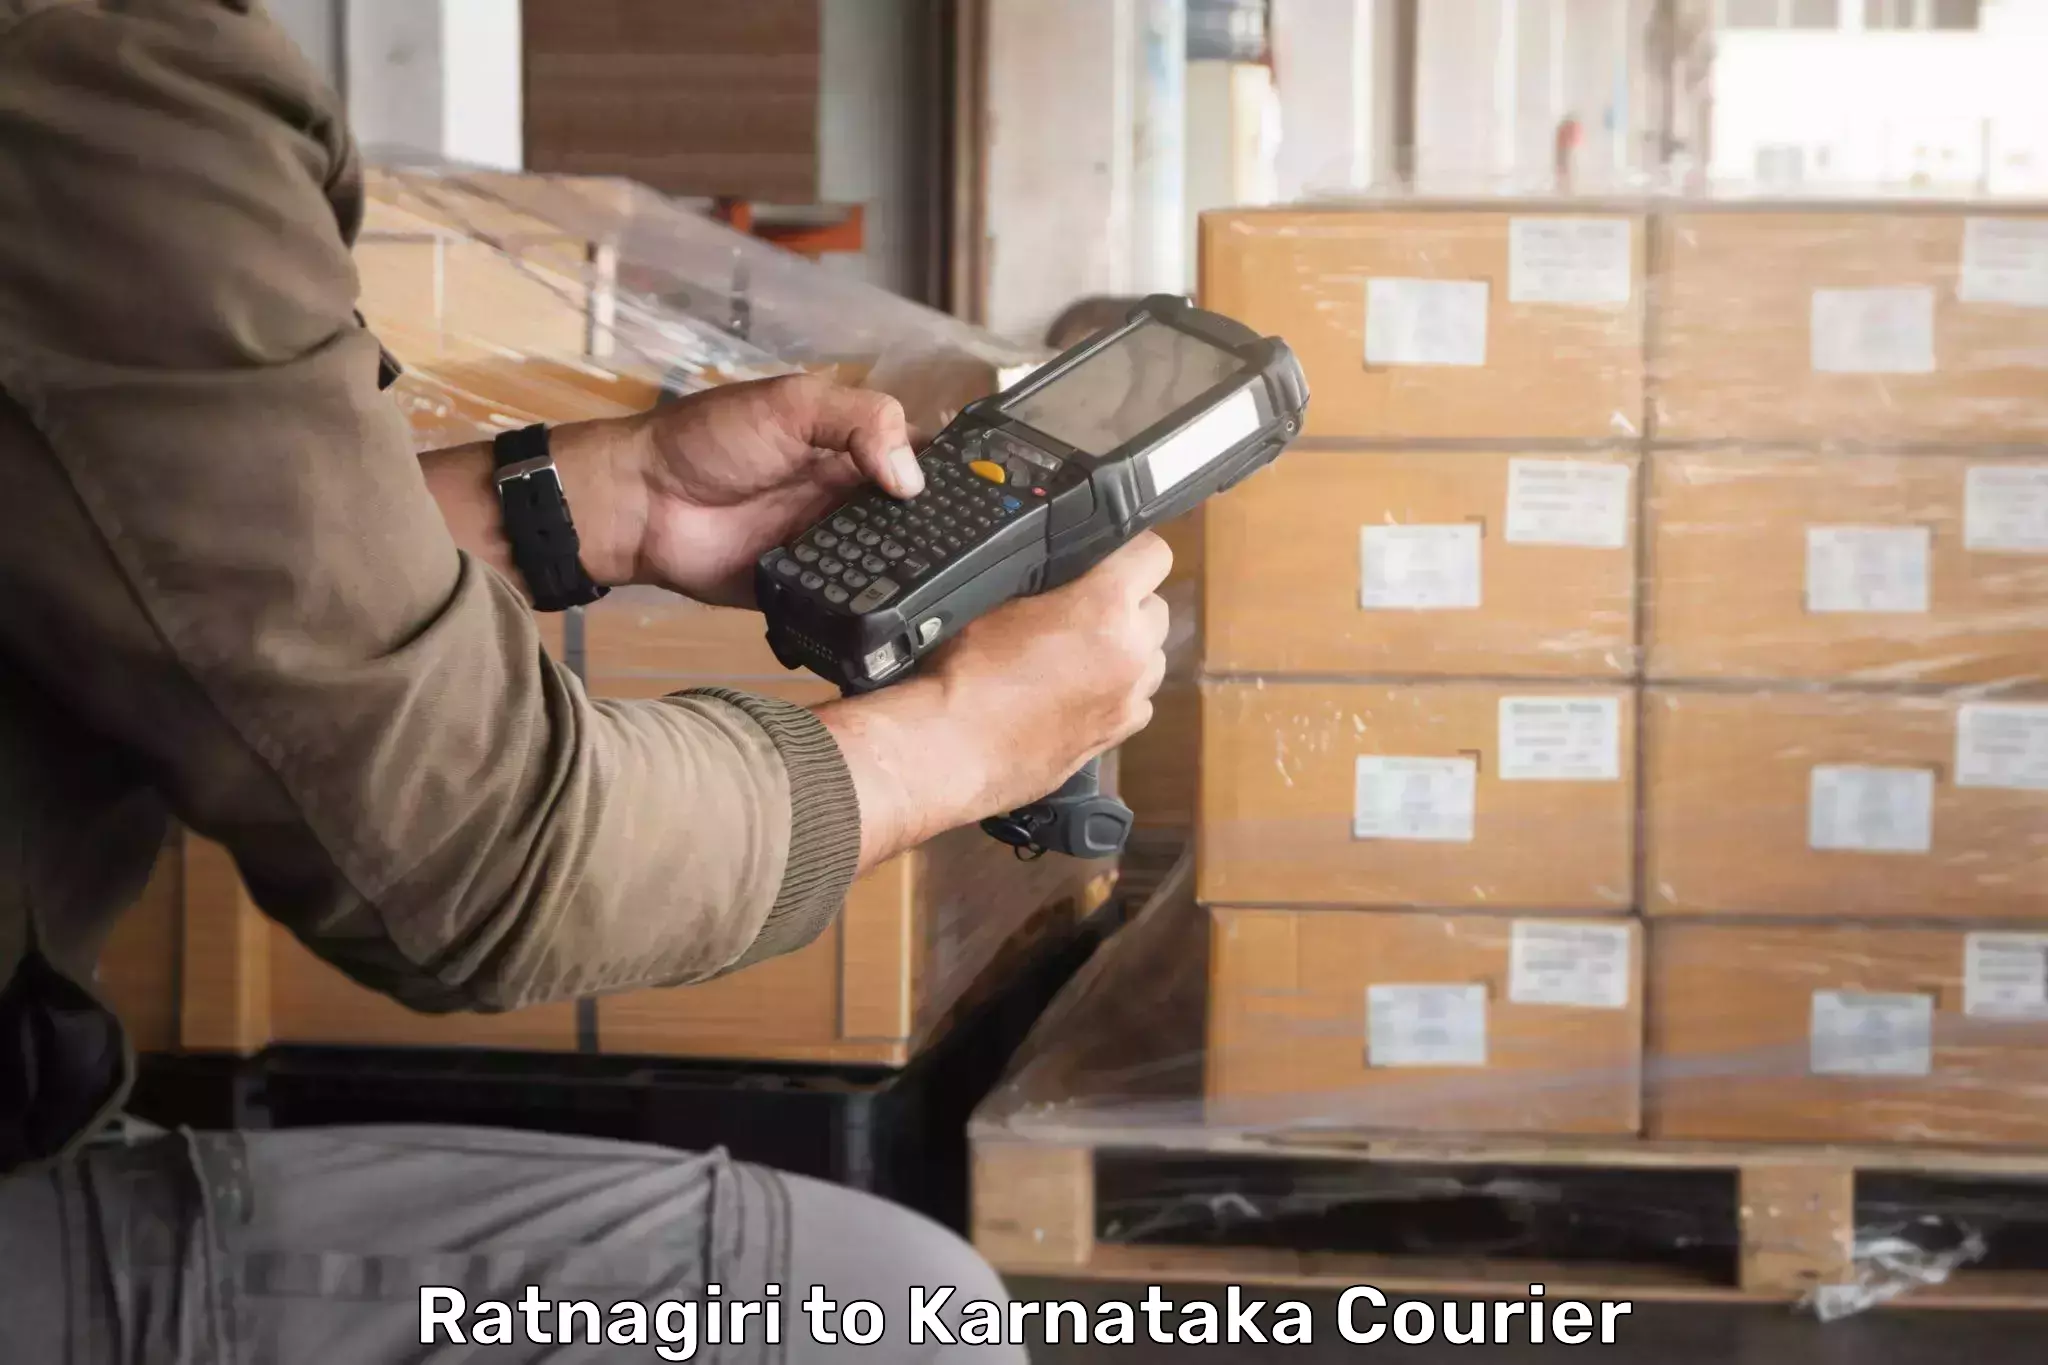 Express logistics providers Ratnagiri to Rona Gadag